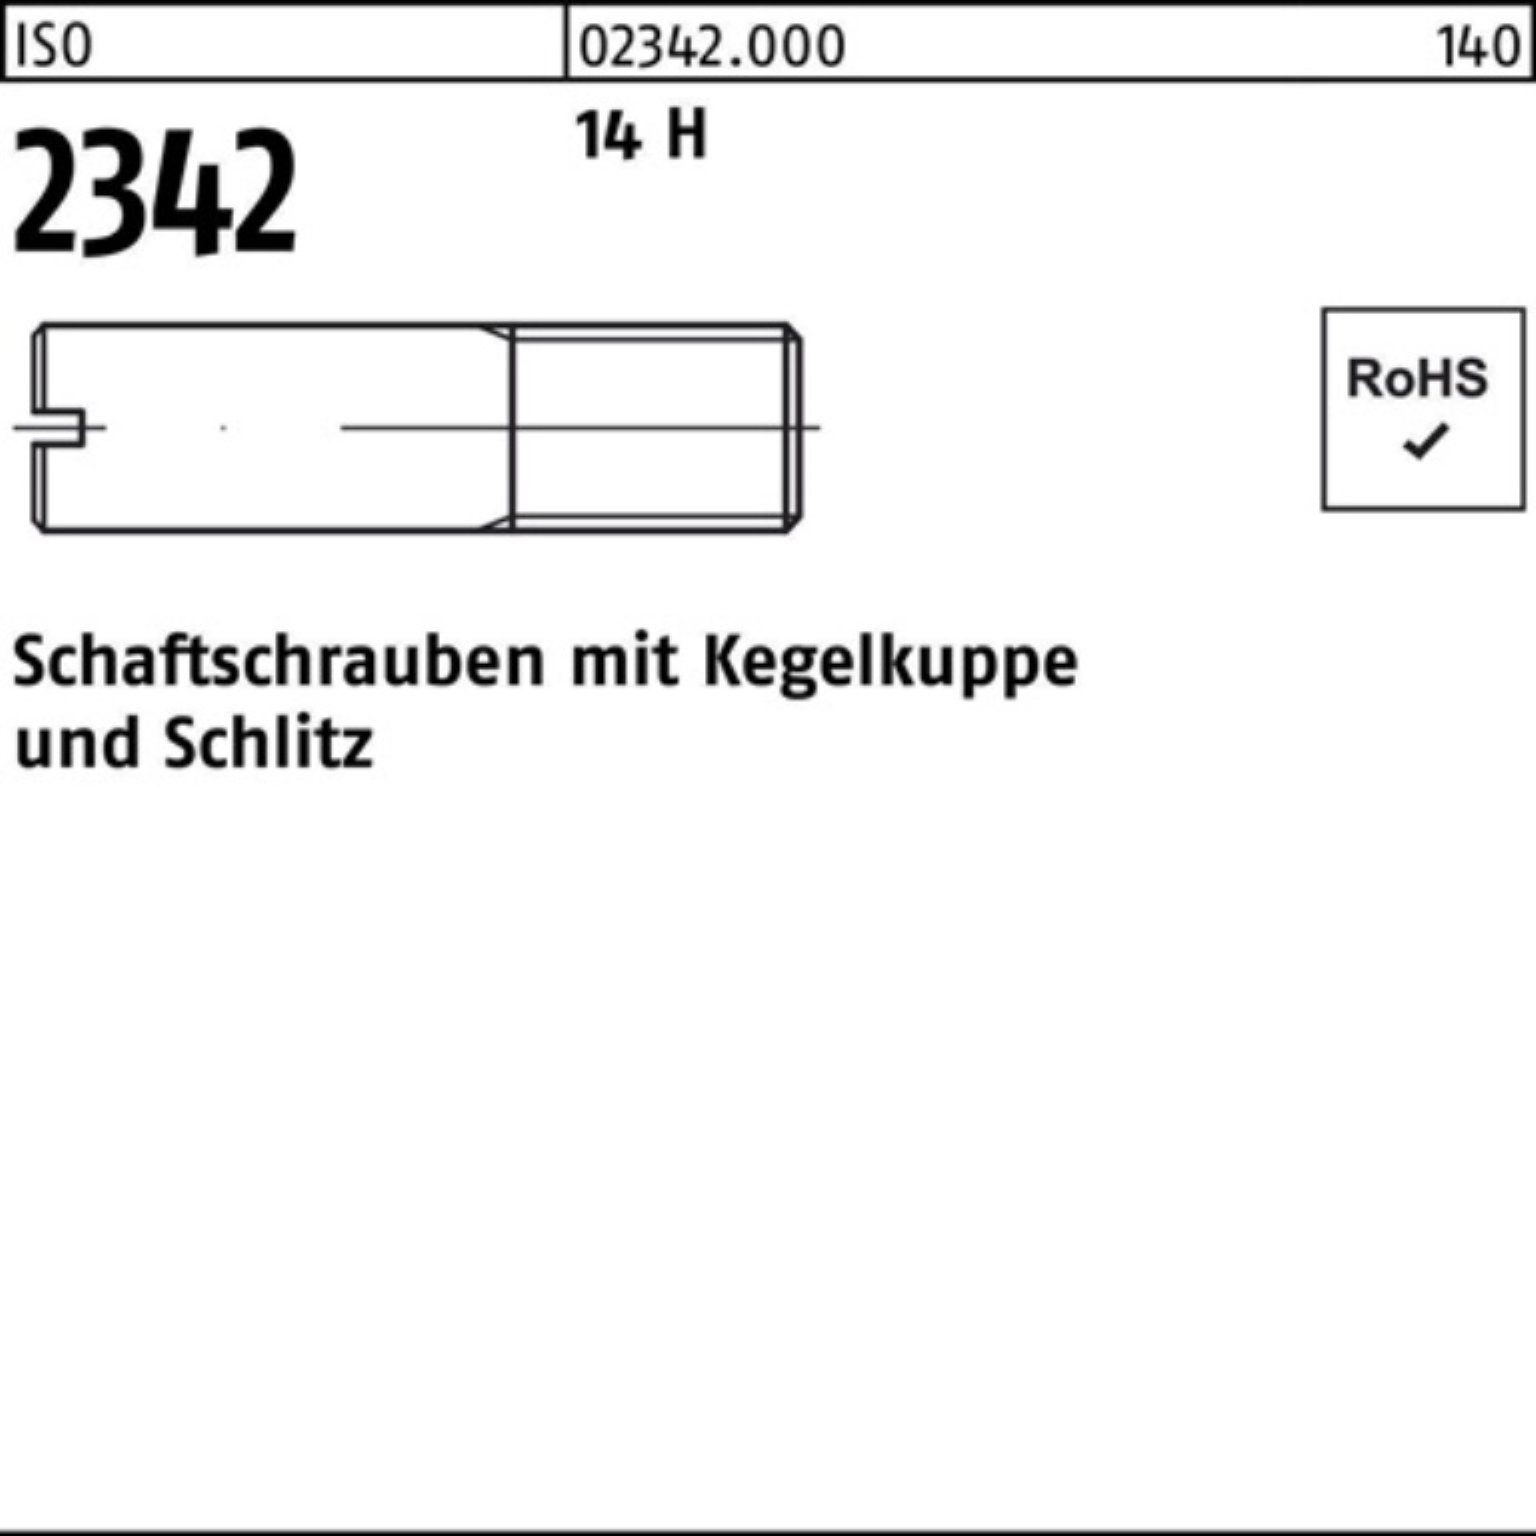 Reyher Schraube 100er Pack Schaftschraube ISO 2342 Kegelkuppe/Schlitz M6x 40 14 H 100